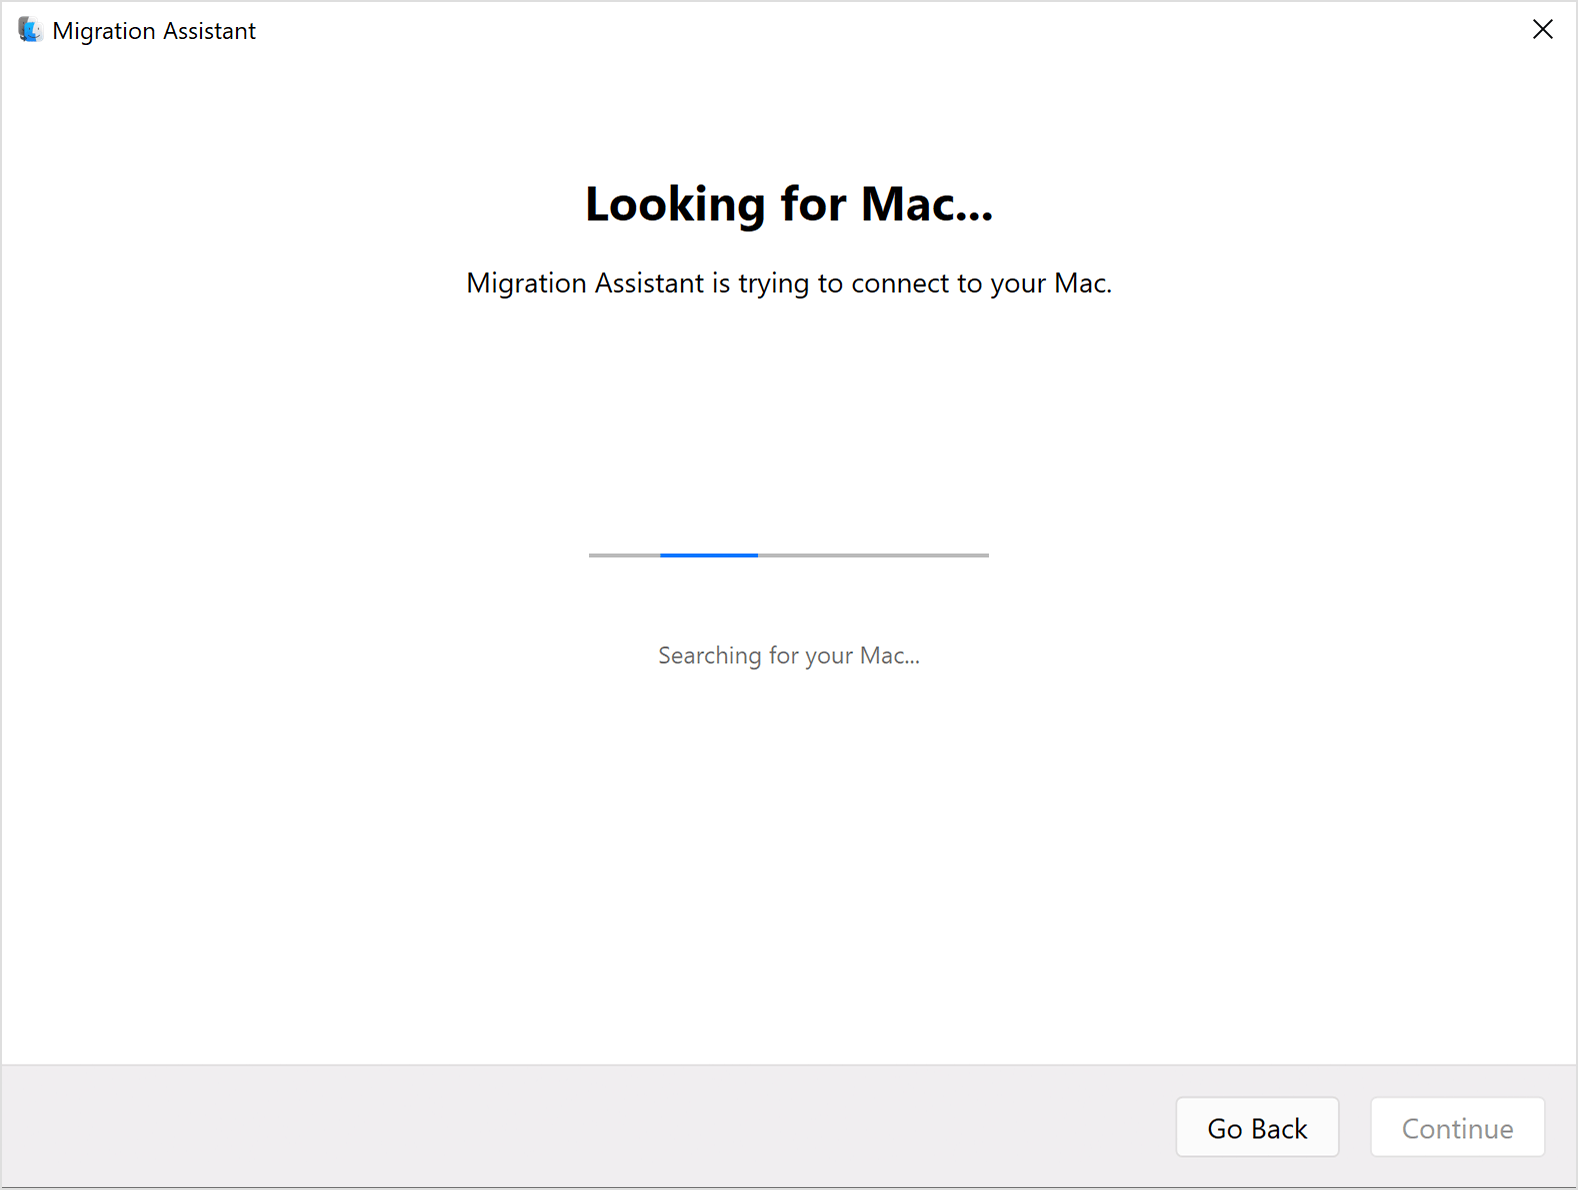 "مساعد نقل البيانات" على الكمبيوتر الشخصي (PC): البحث عن Mac...